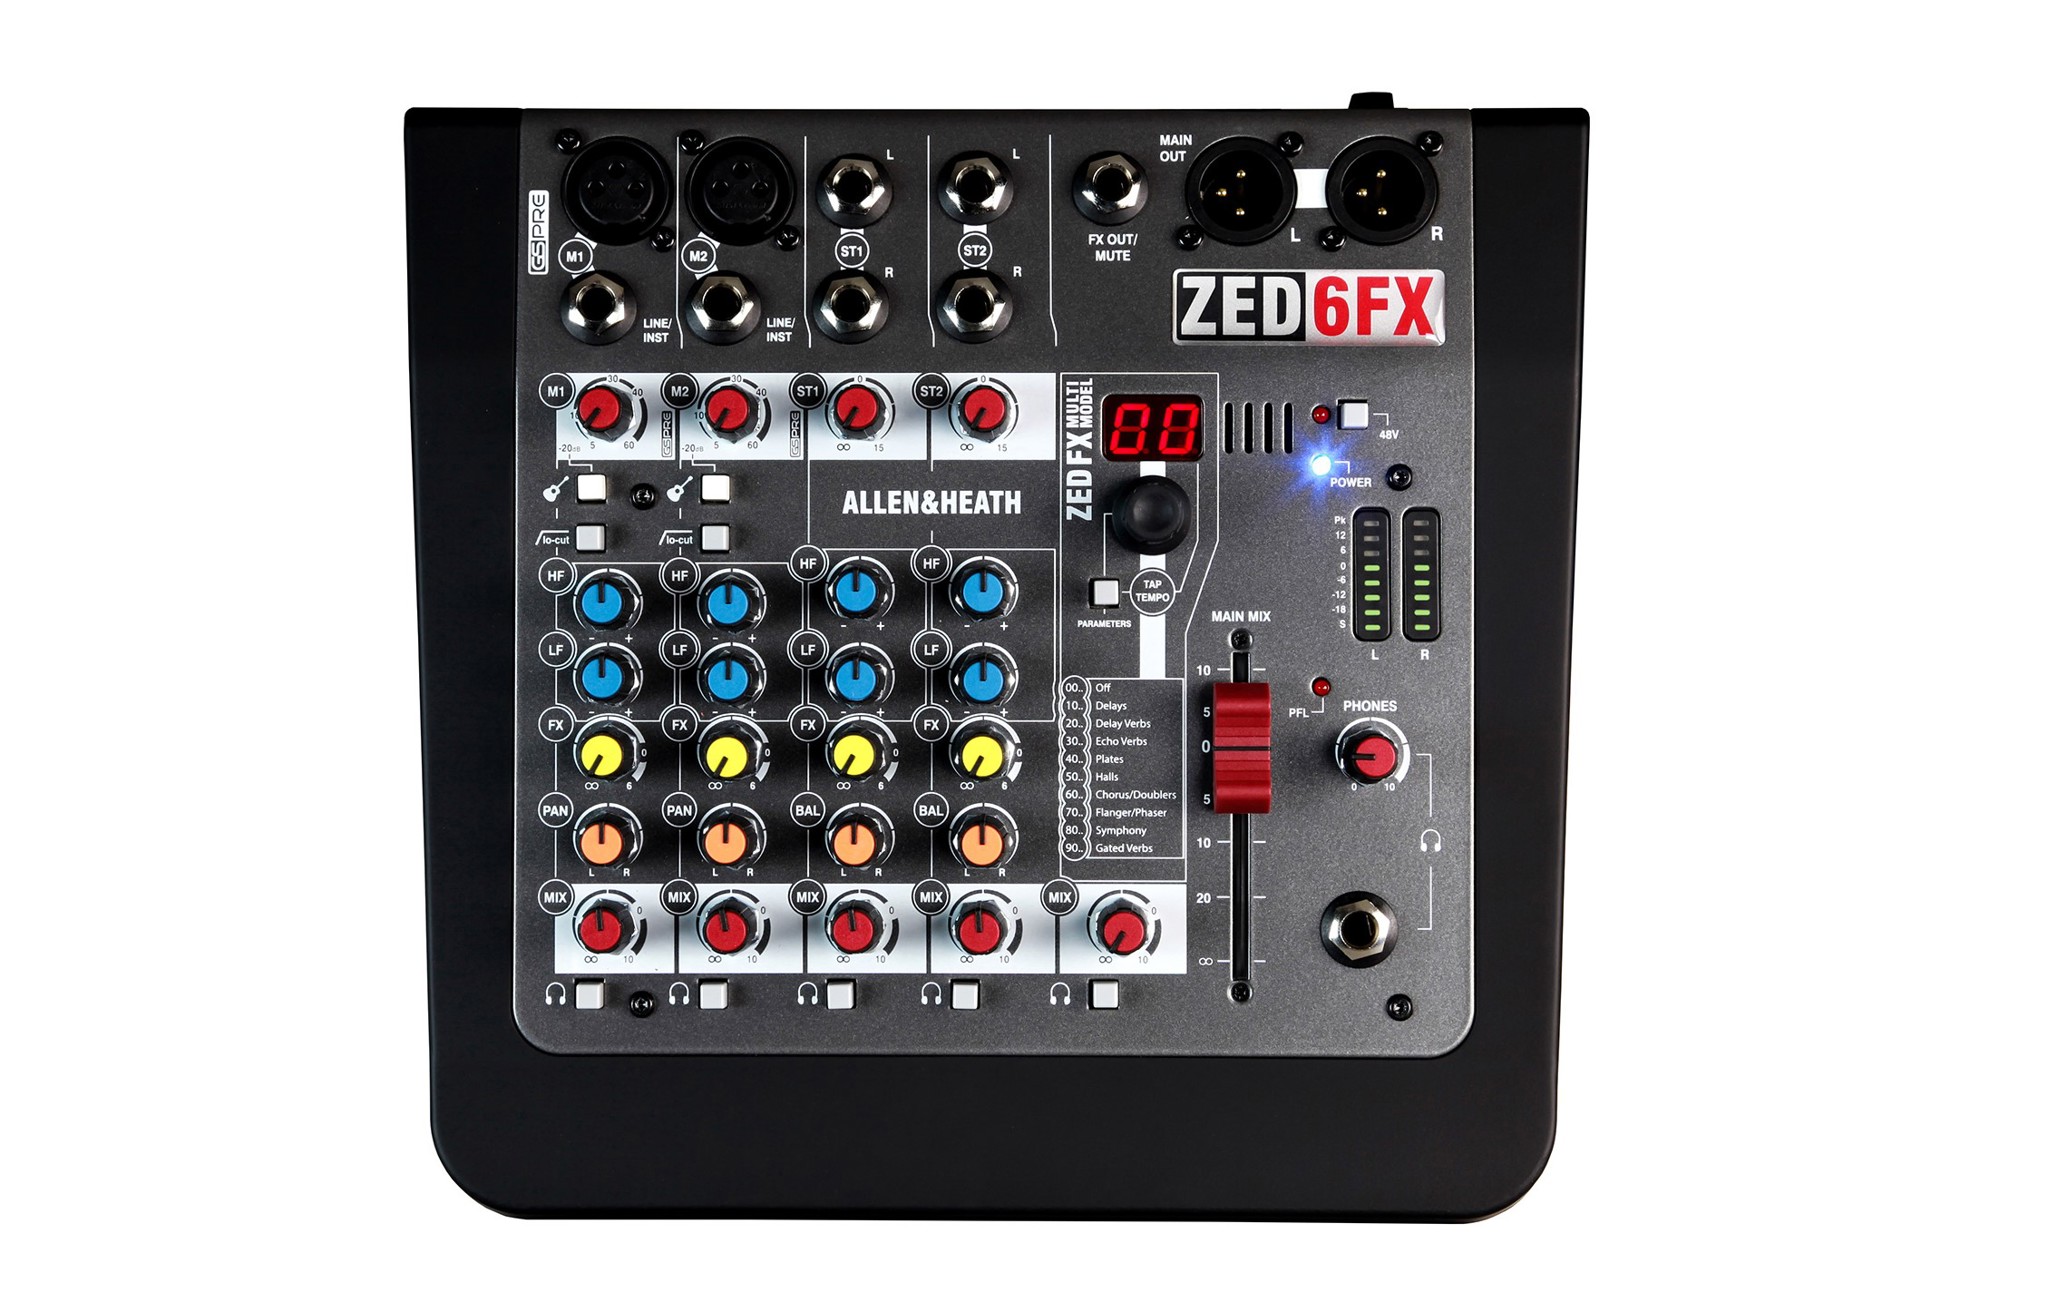 hinh anh ban mixer ZED6FX so 3